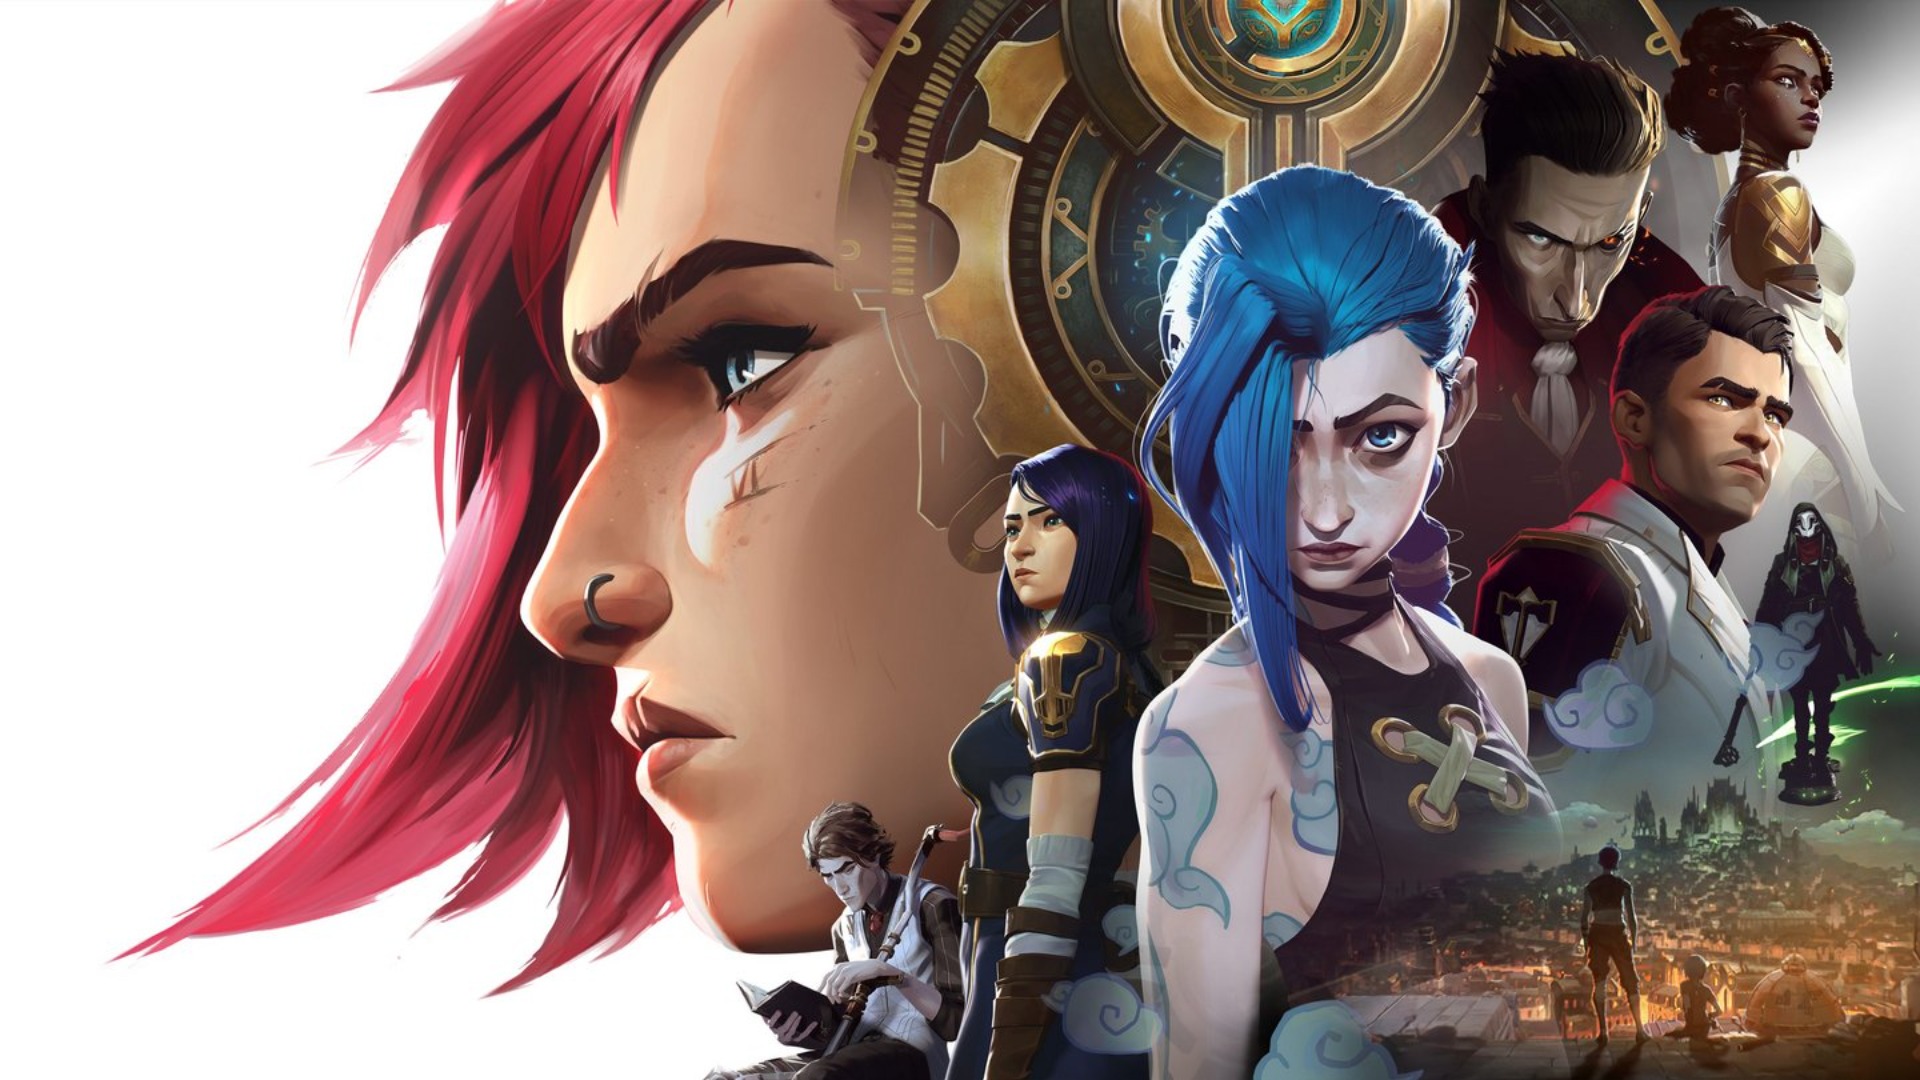 HD wallpaper: Jinx, League of Legends, blue hair girl | Wallpaper Flare